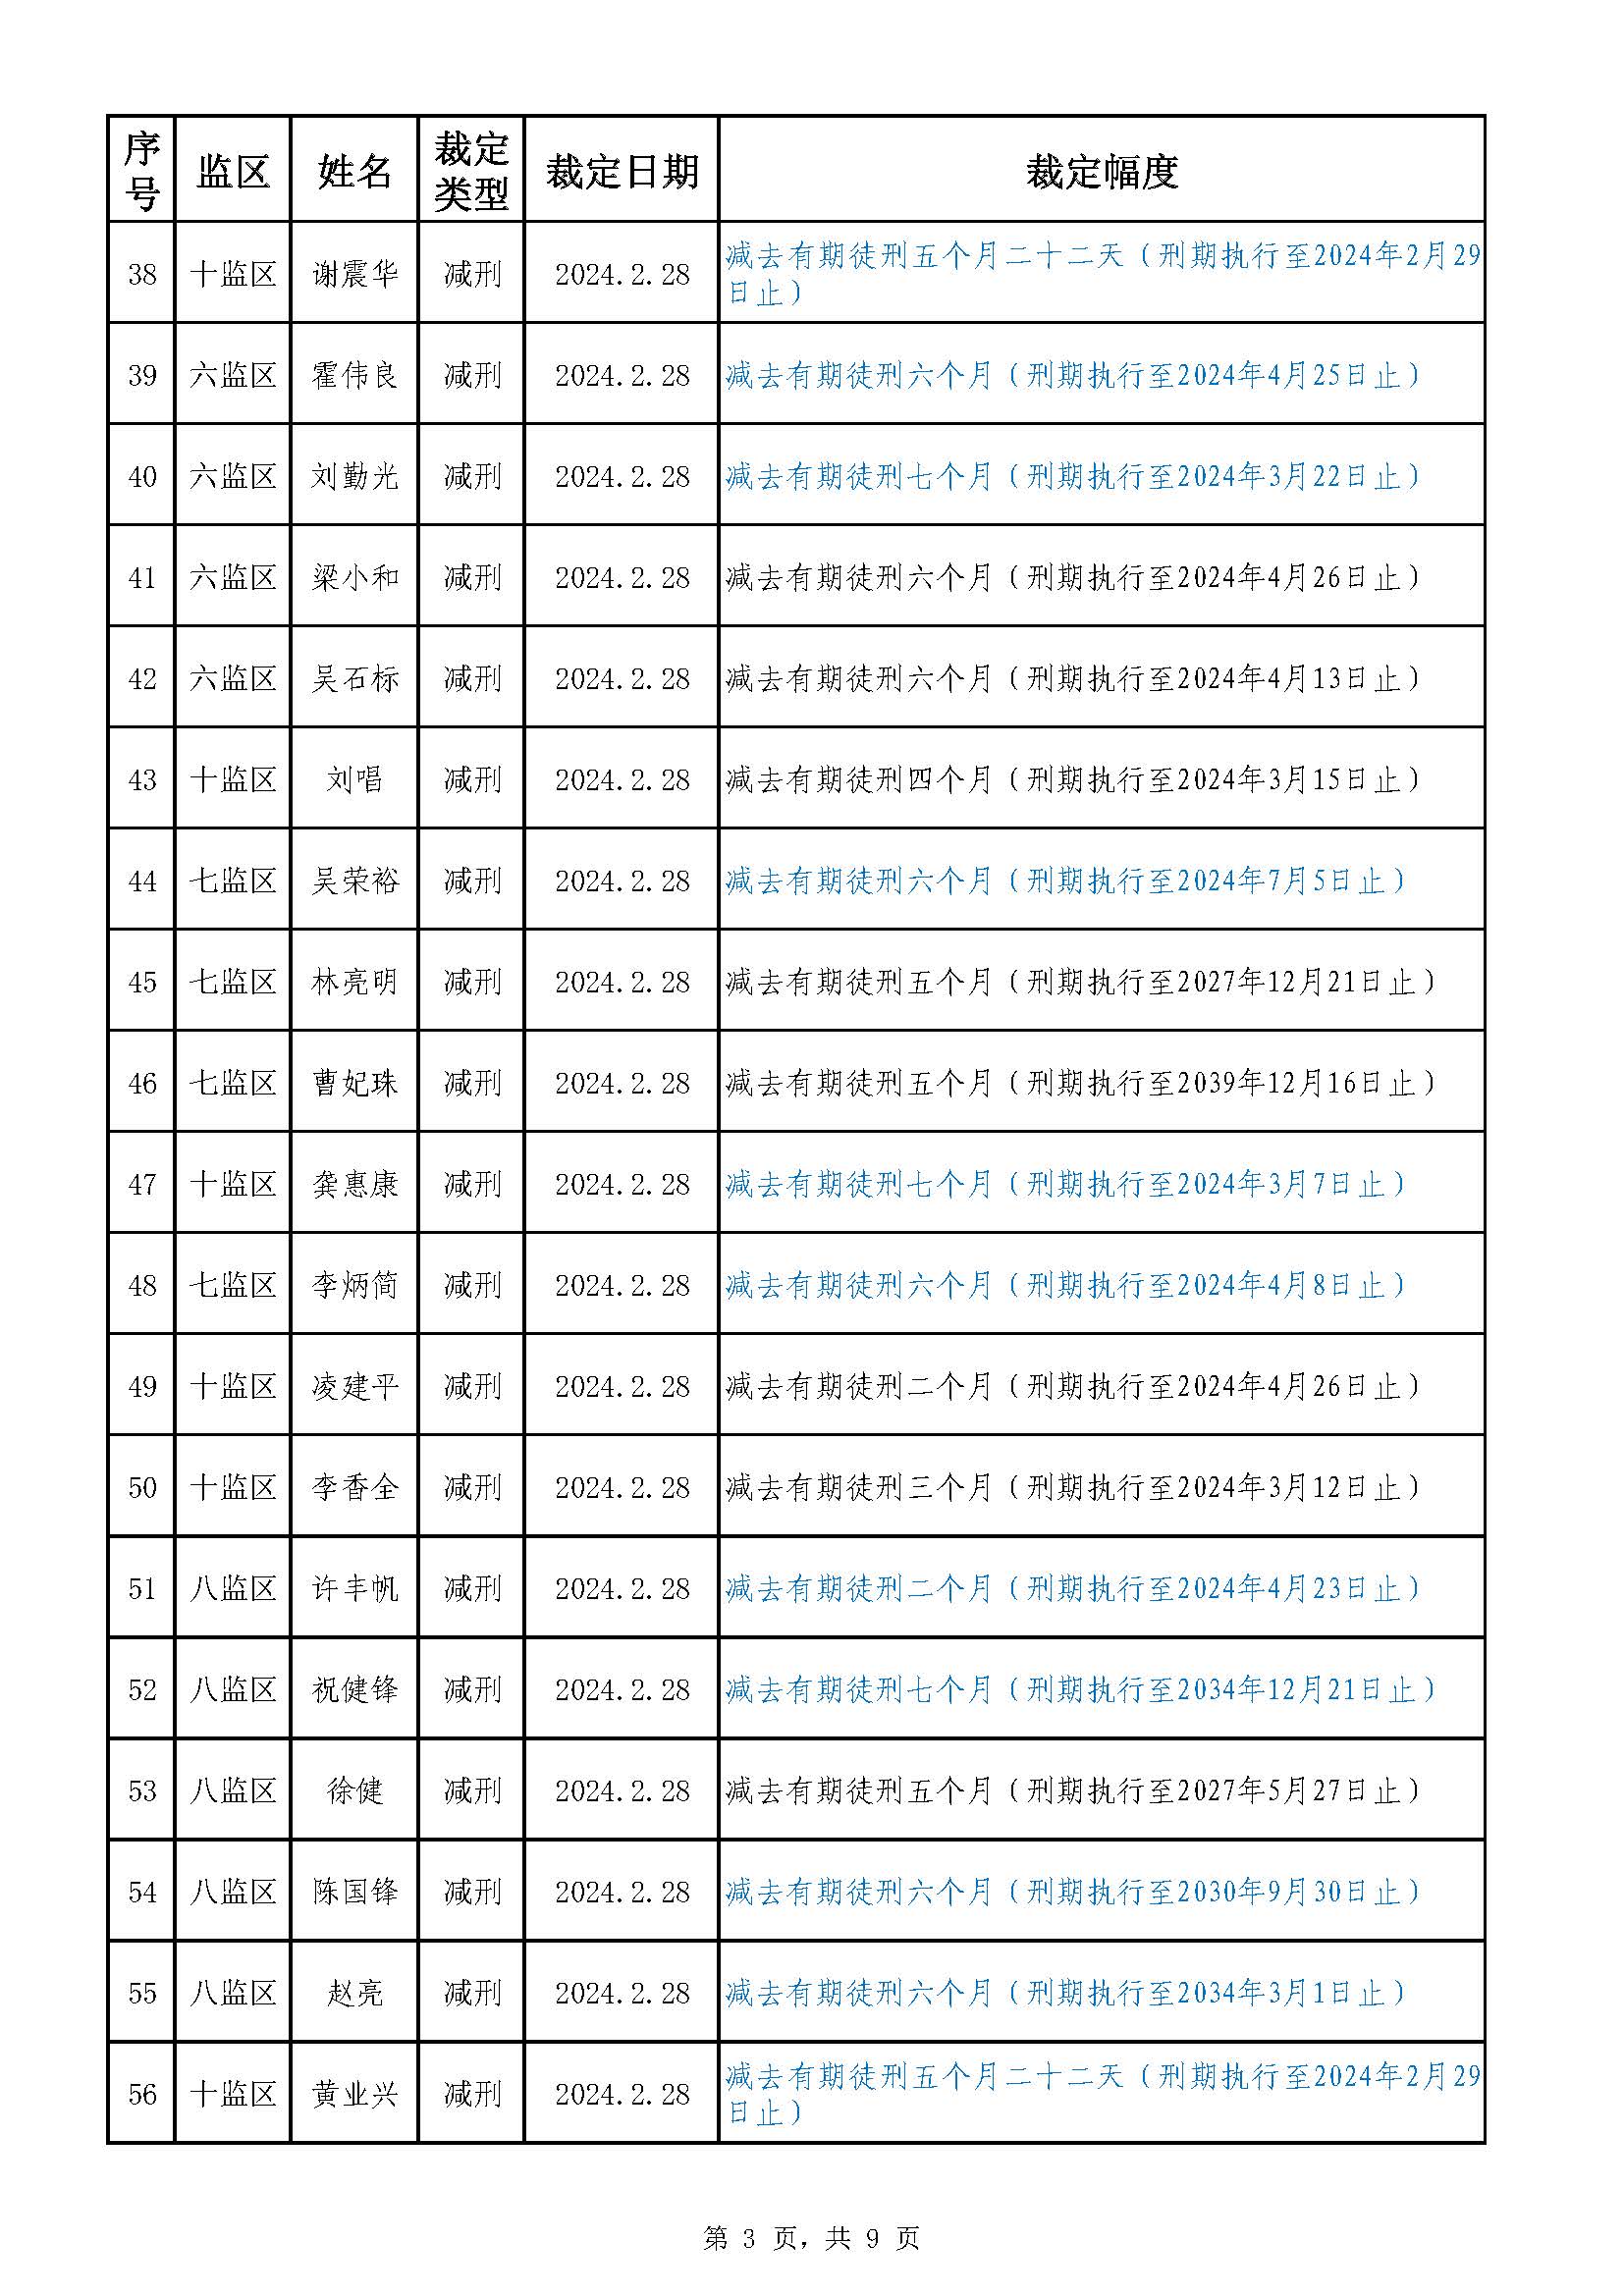 22.39 广东省明康监狱2023年第六批减刑假释裁定榜（公示）_页面_3.jpg